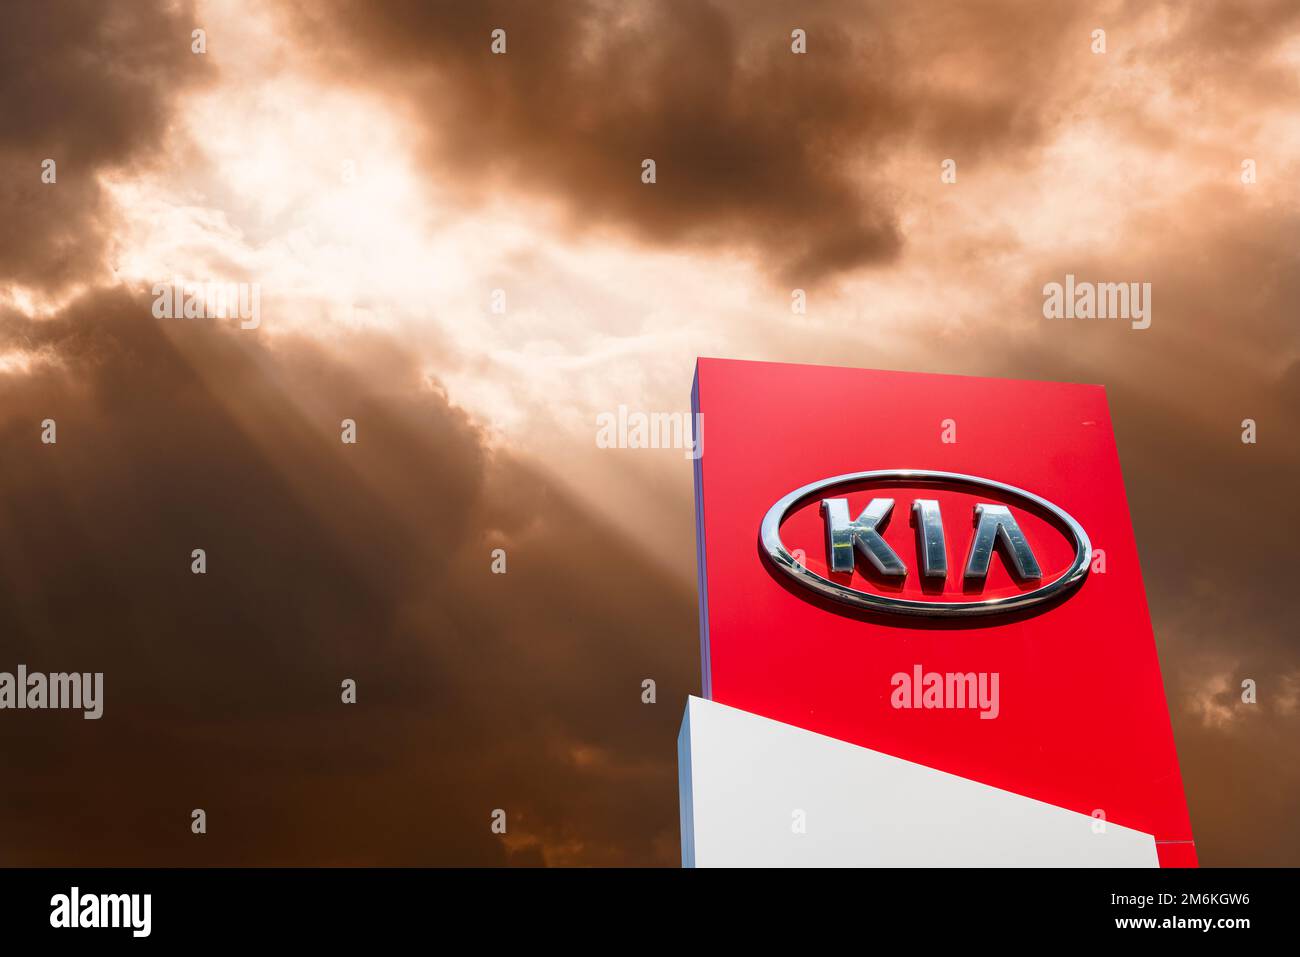 Kia car company sign and logo Stock Photo